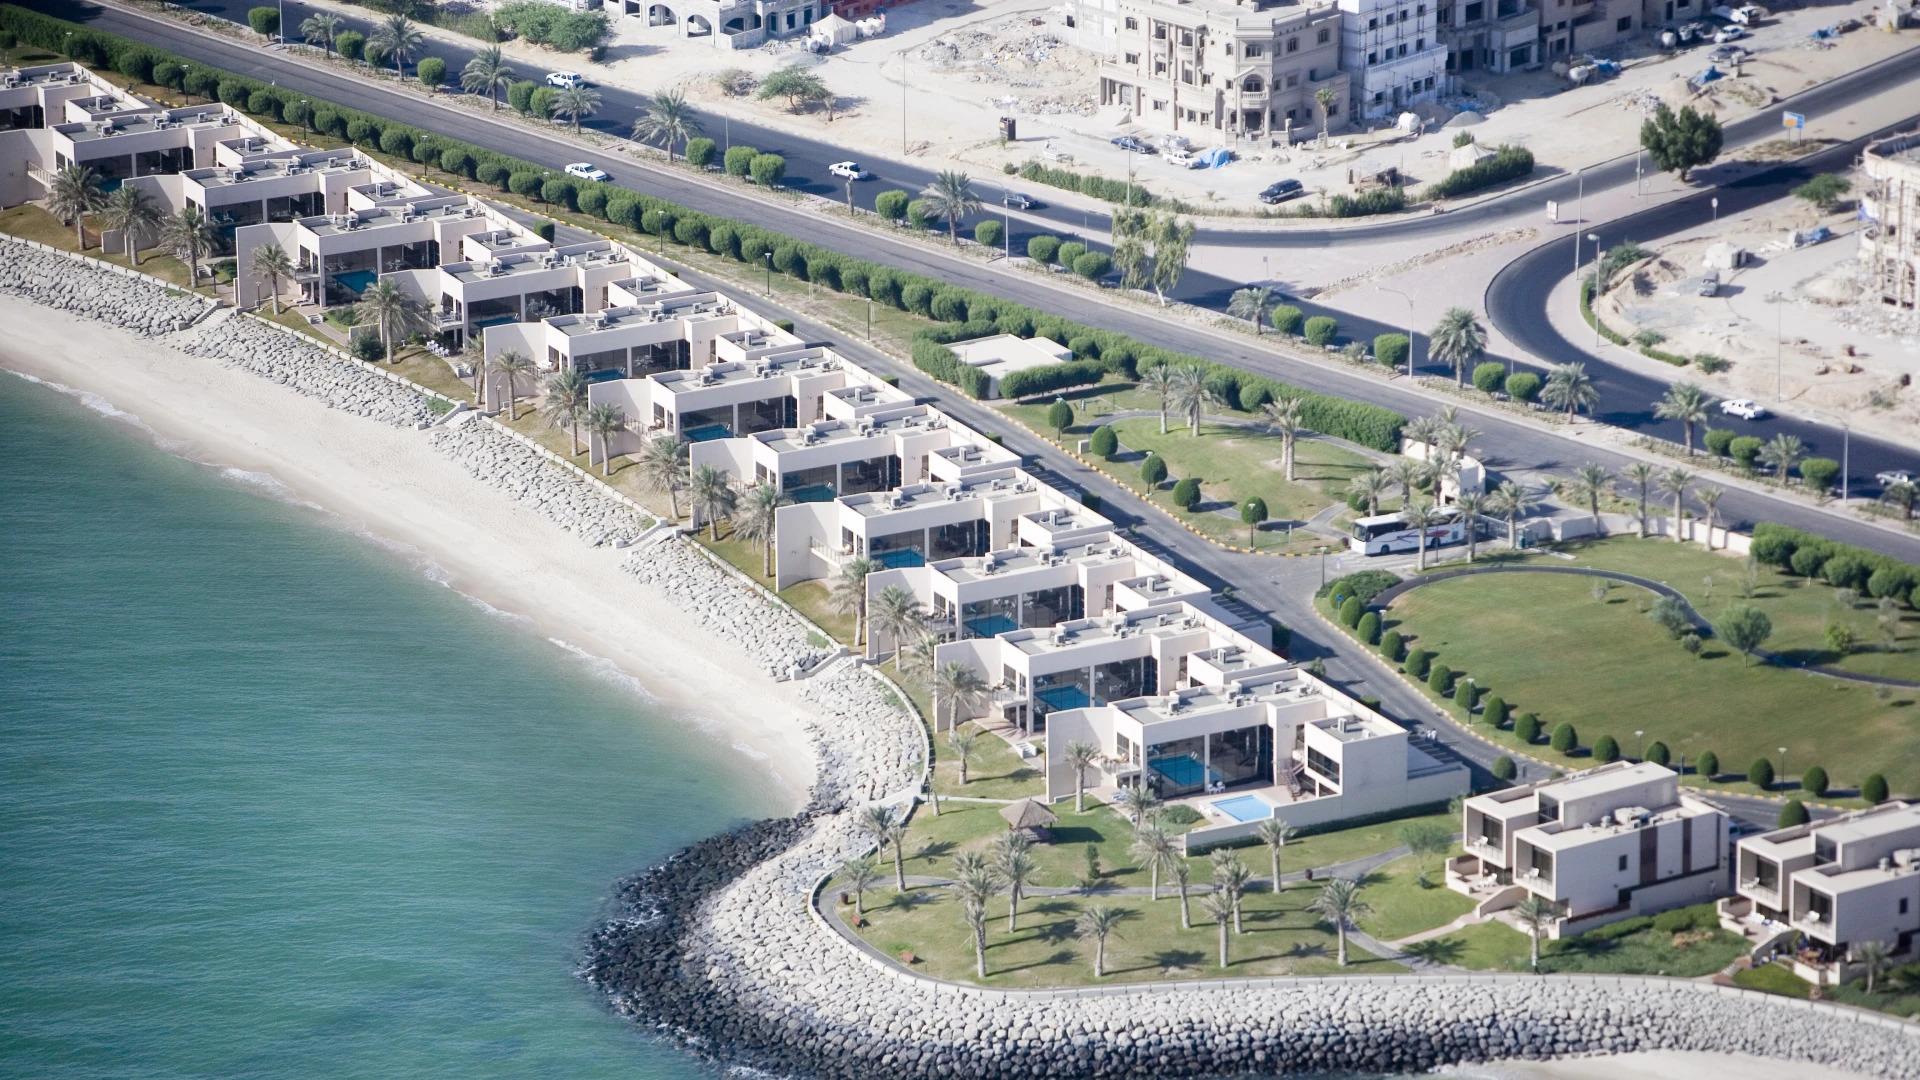 Hilton Kuwait Resort Aerial View